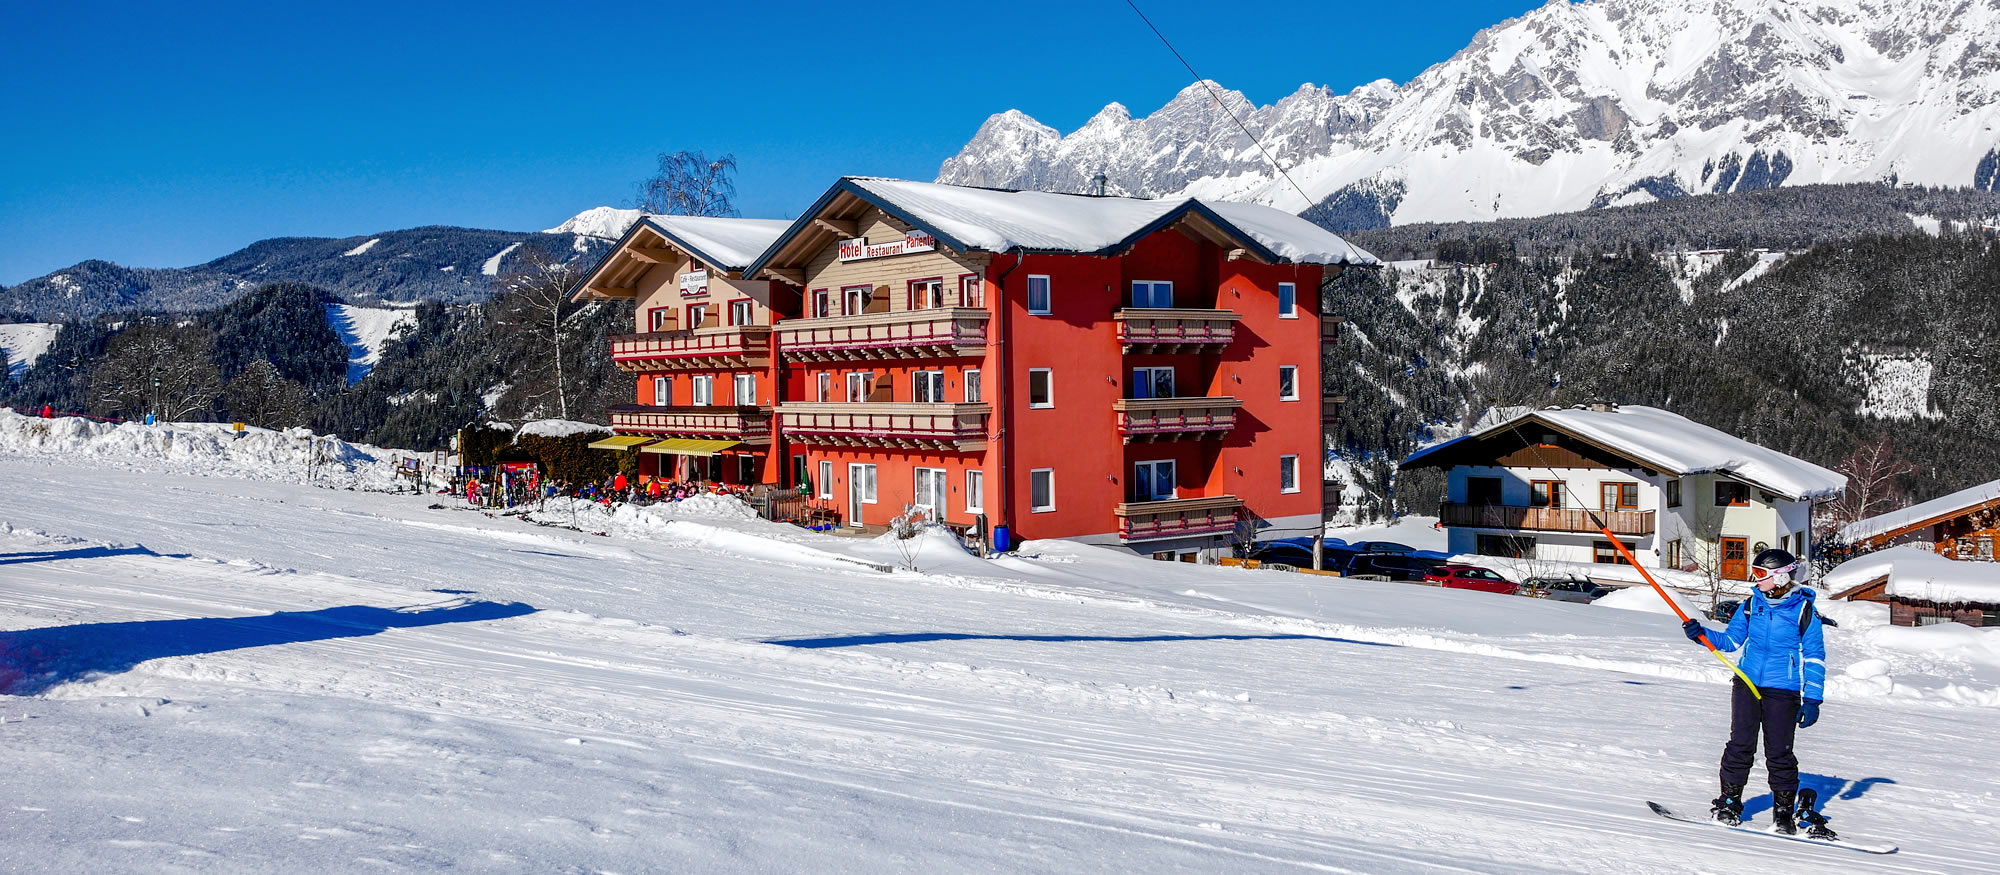 Unser Hotel/Skihütte liegt direkt an der Skipiste in Rohrmoos-Schladming, Ski amadé